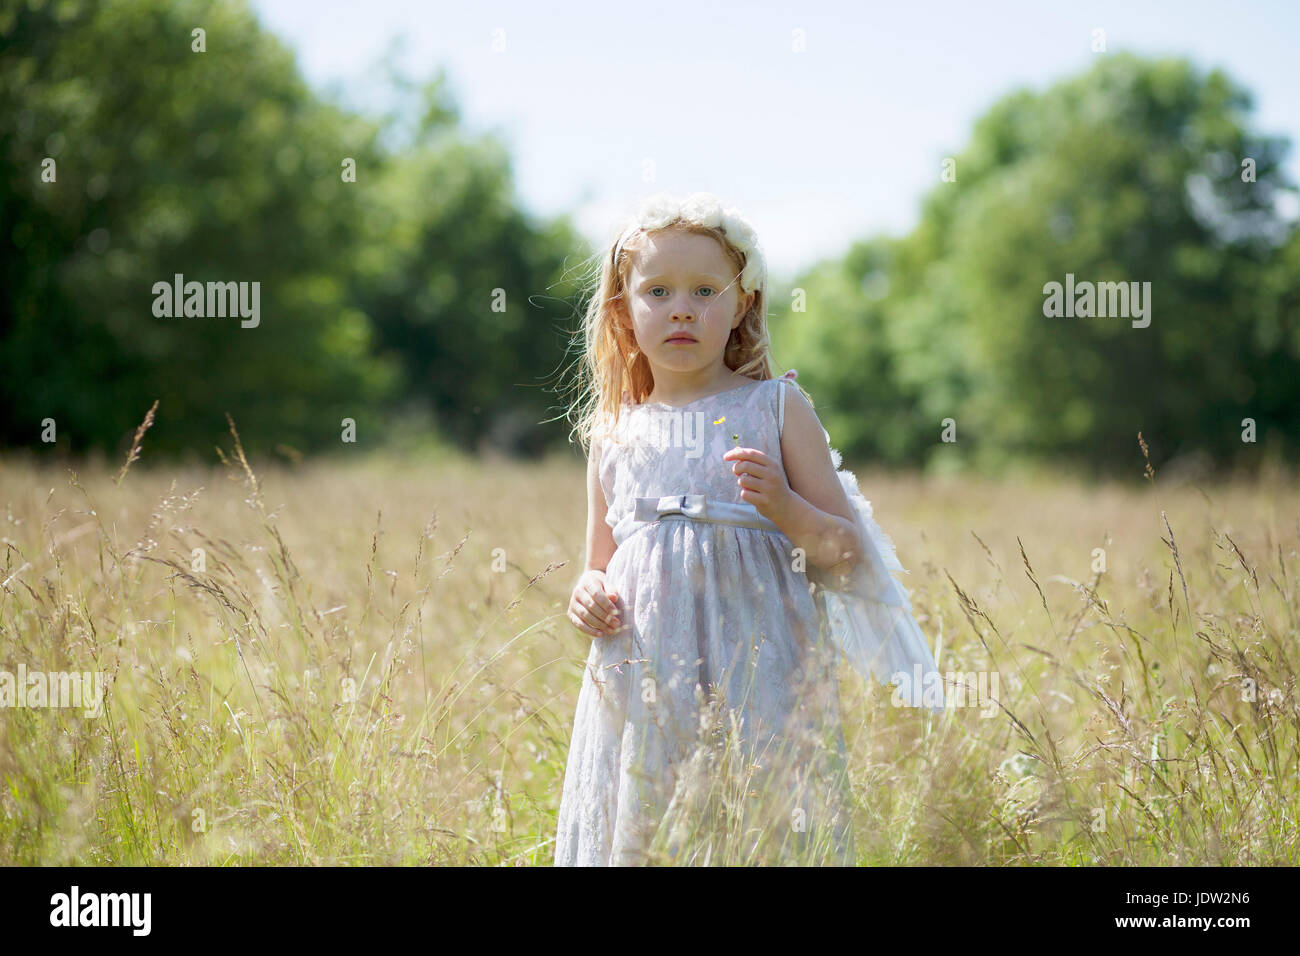 Girl wearing angel wings in field Stock Photo